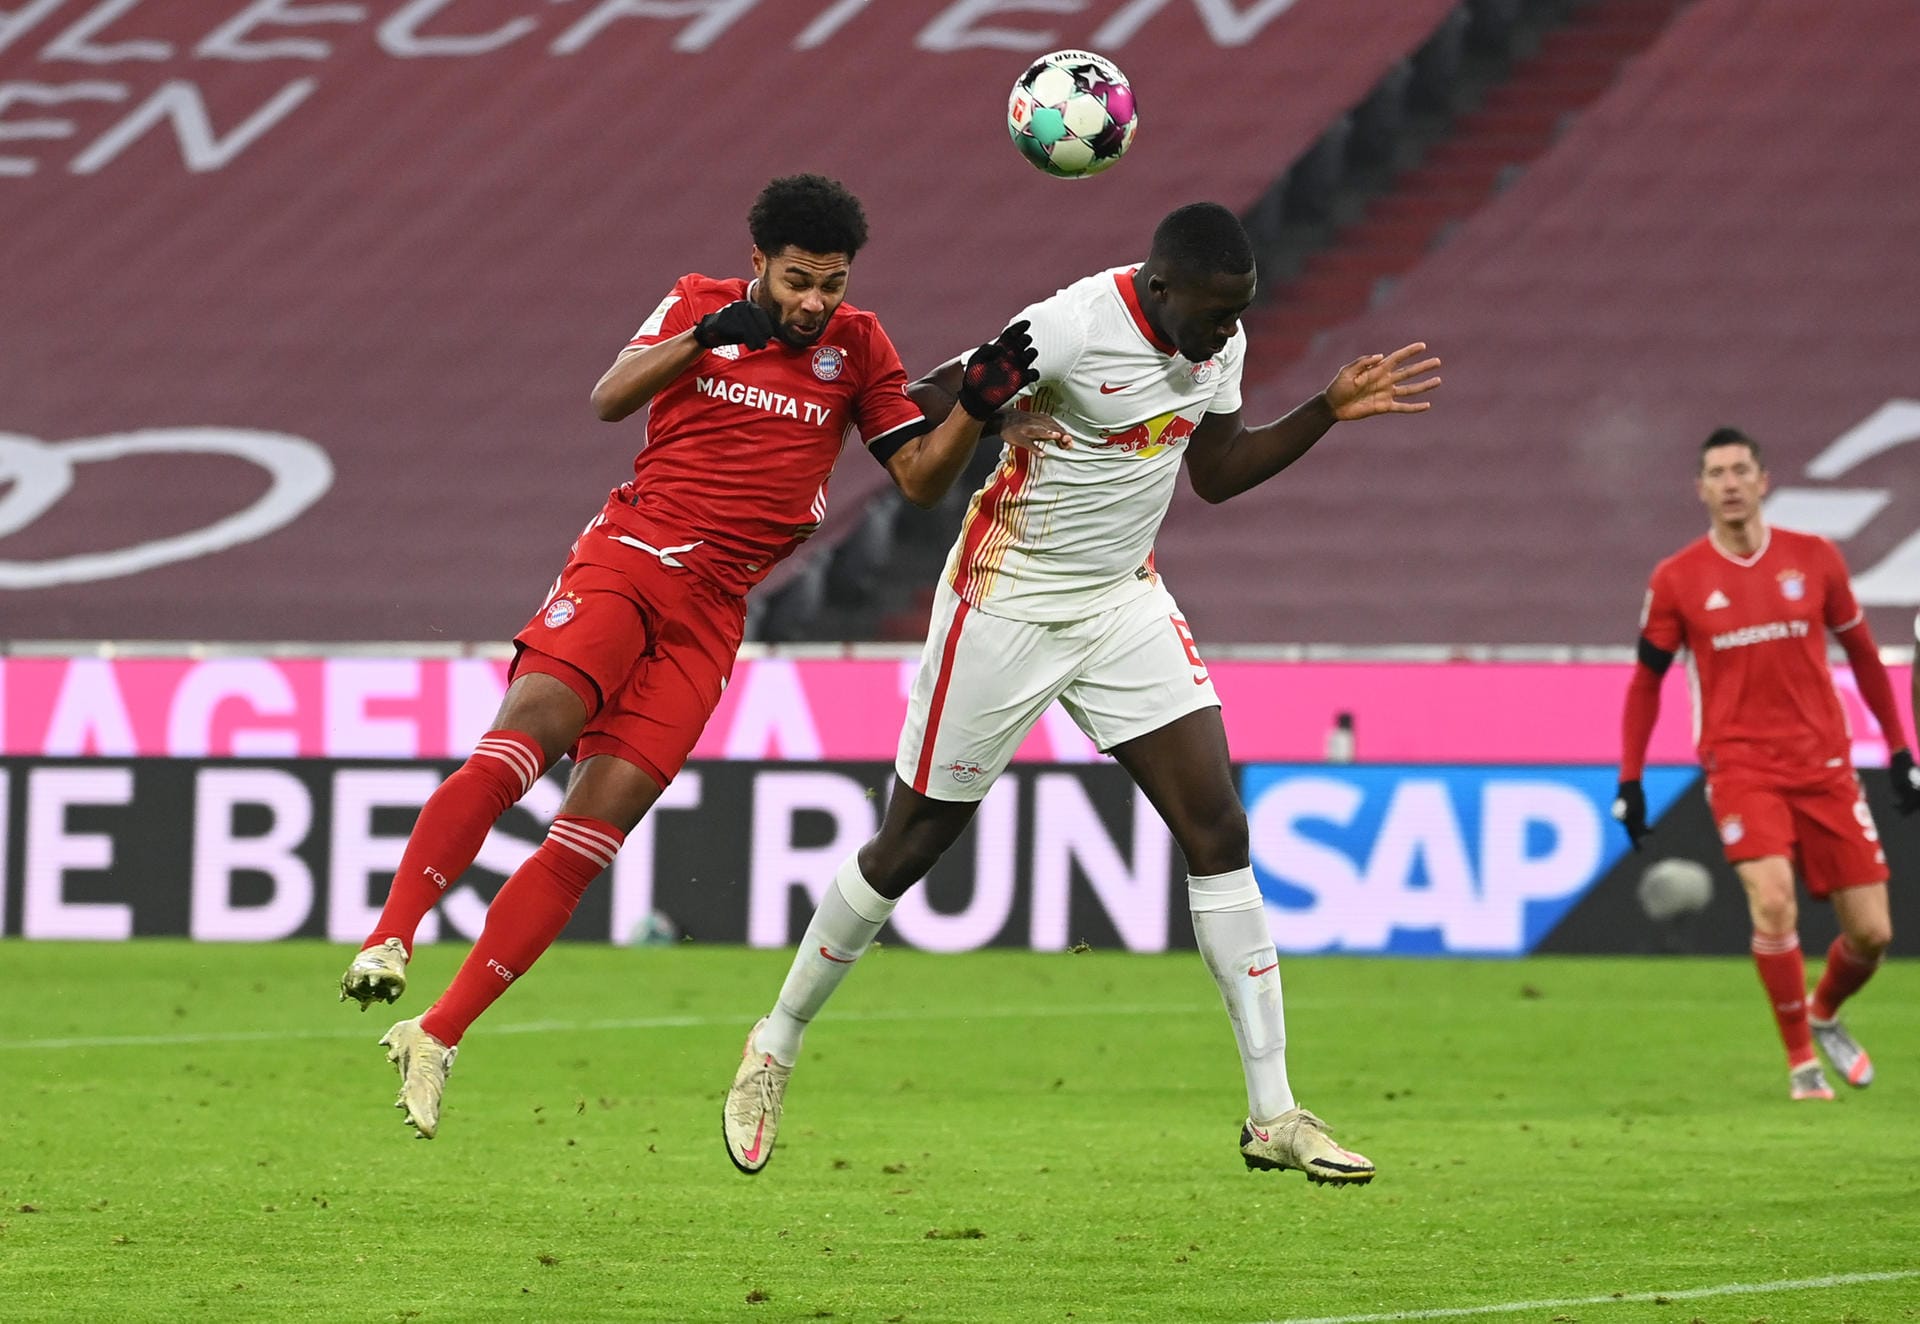 Ibrahima Konaté: Mit Nebenmann Upamecano dafür verantwortlich, dass die Bayern-Offensive um Lewandowski fast überhaupt nicht zur Entfaltung kam. Ließ nur beim 1:2 durch Müller den Ex-Nationalspieler laufen. Ansonsten starker Auftritt. Note 2